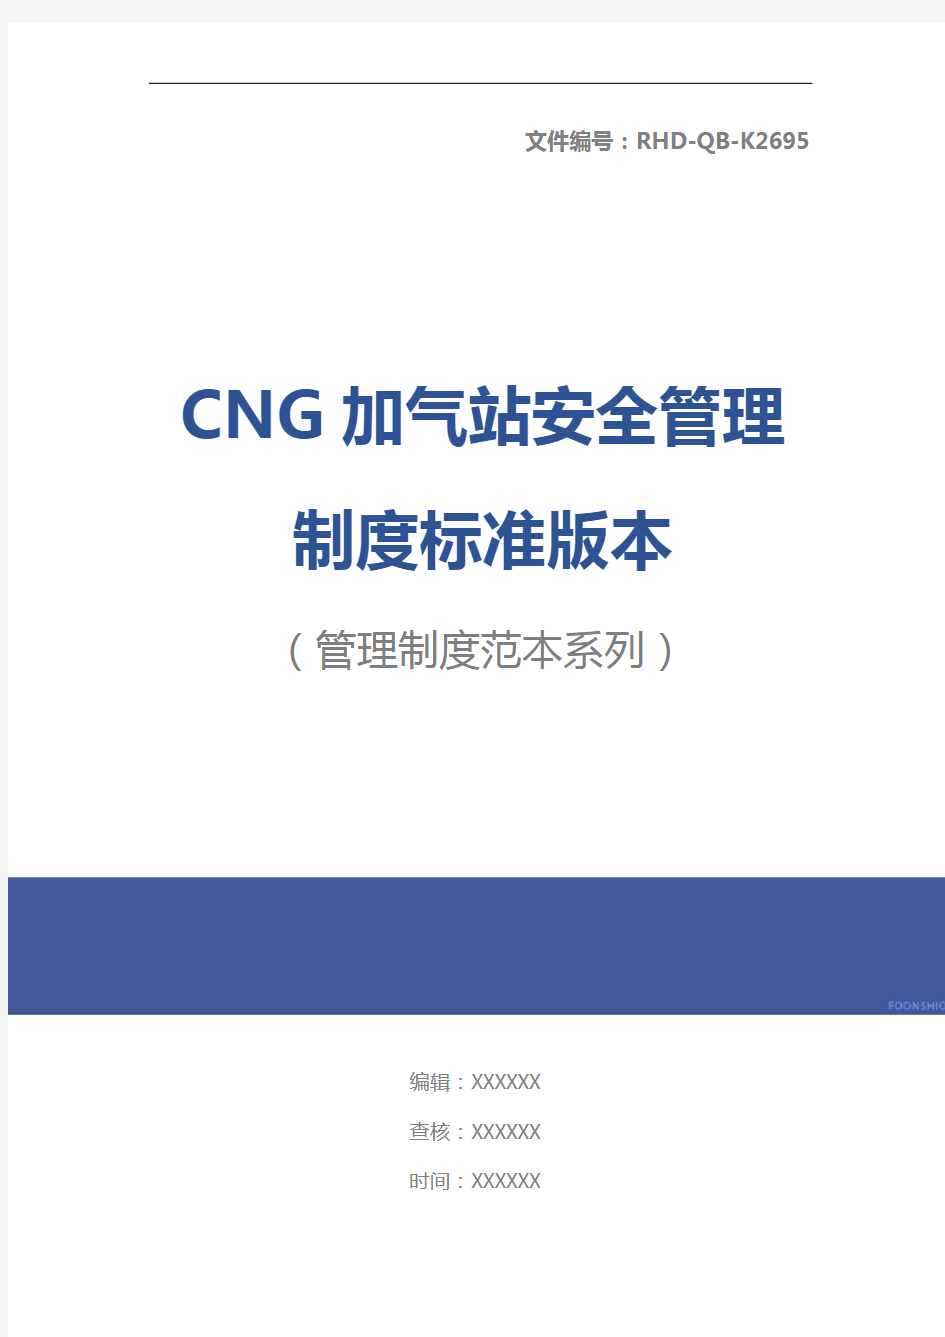 CNG加气站安全管理制度标准版本